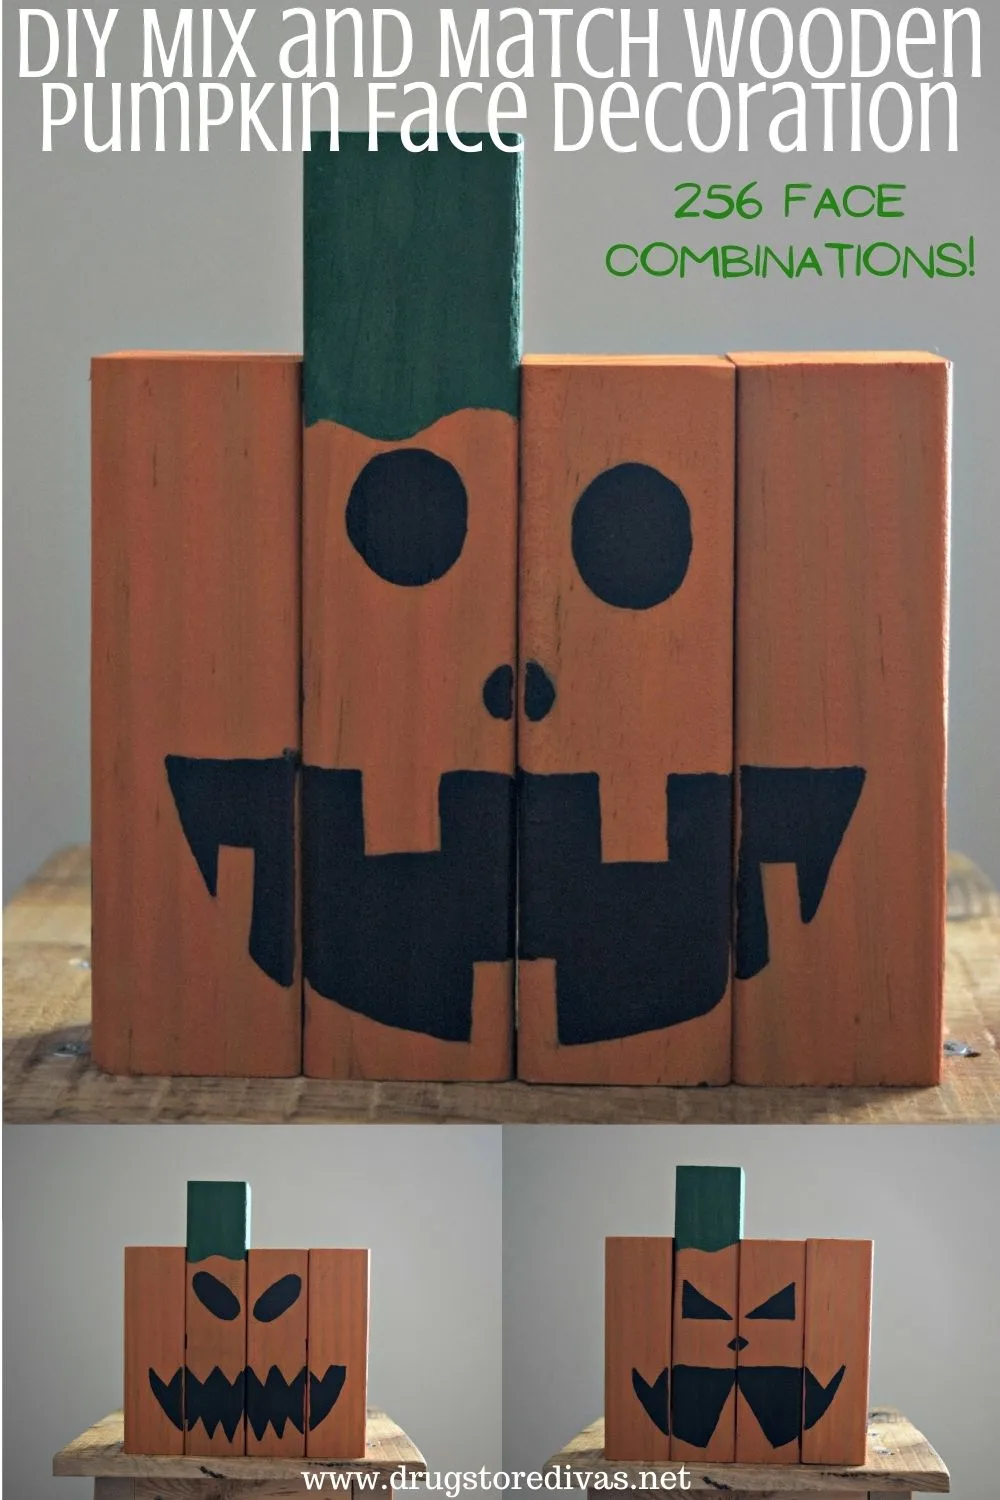 DIY Mix and Match Wooden Pumpkin Face Decoration.